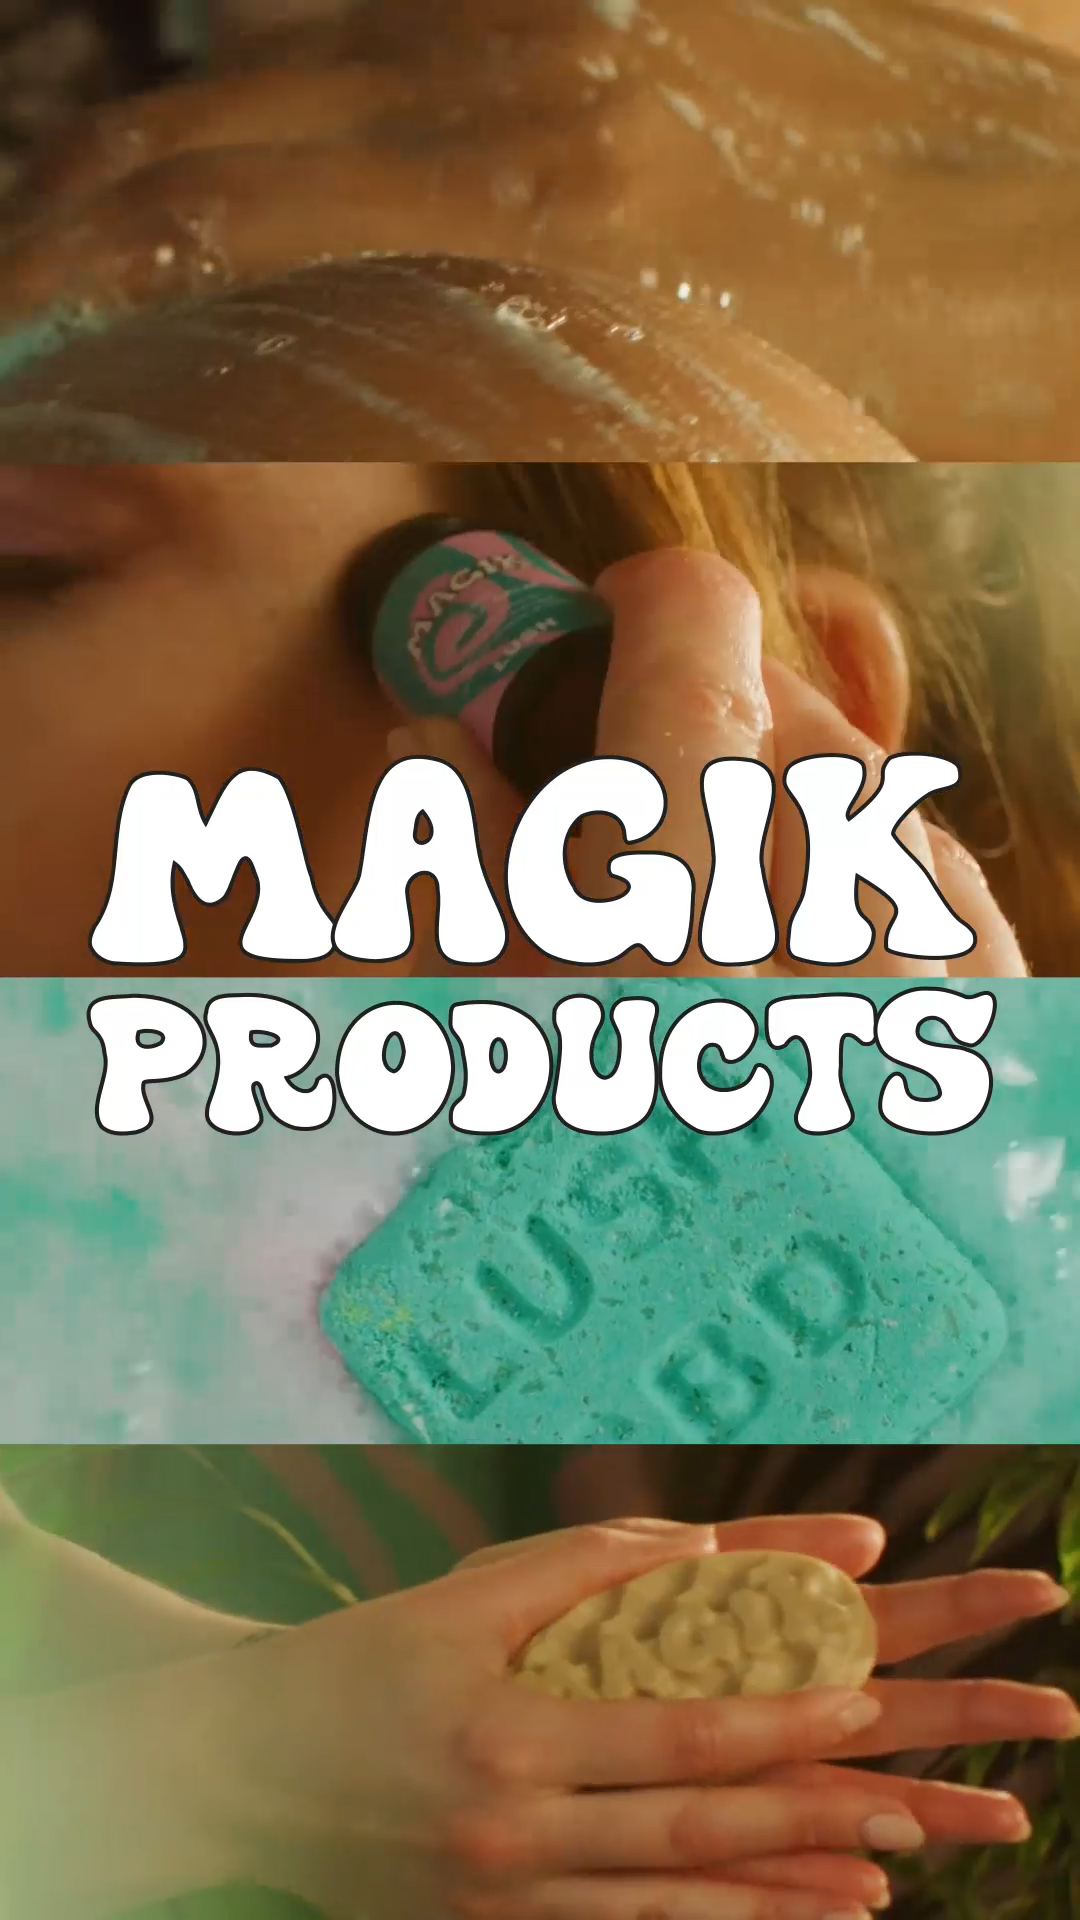 Story: Magik/CBD Range - Do you believe in magik?